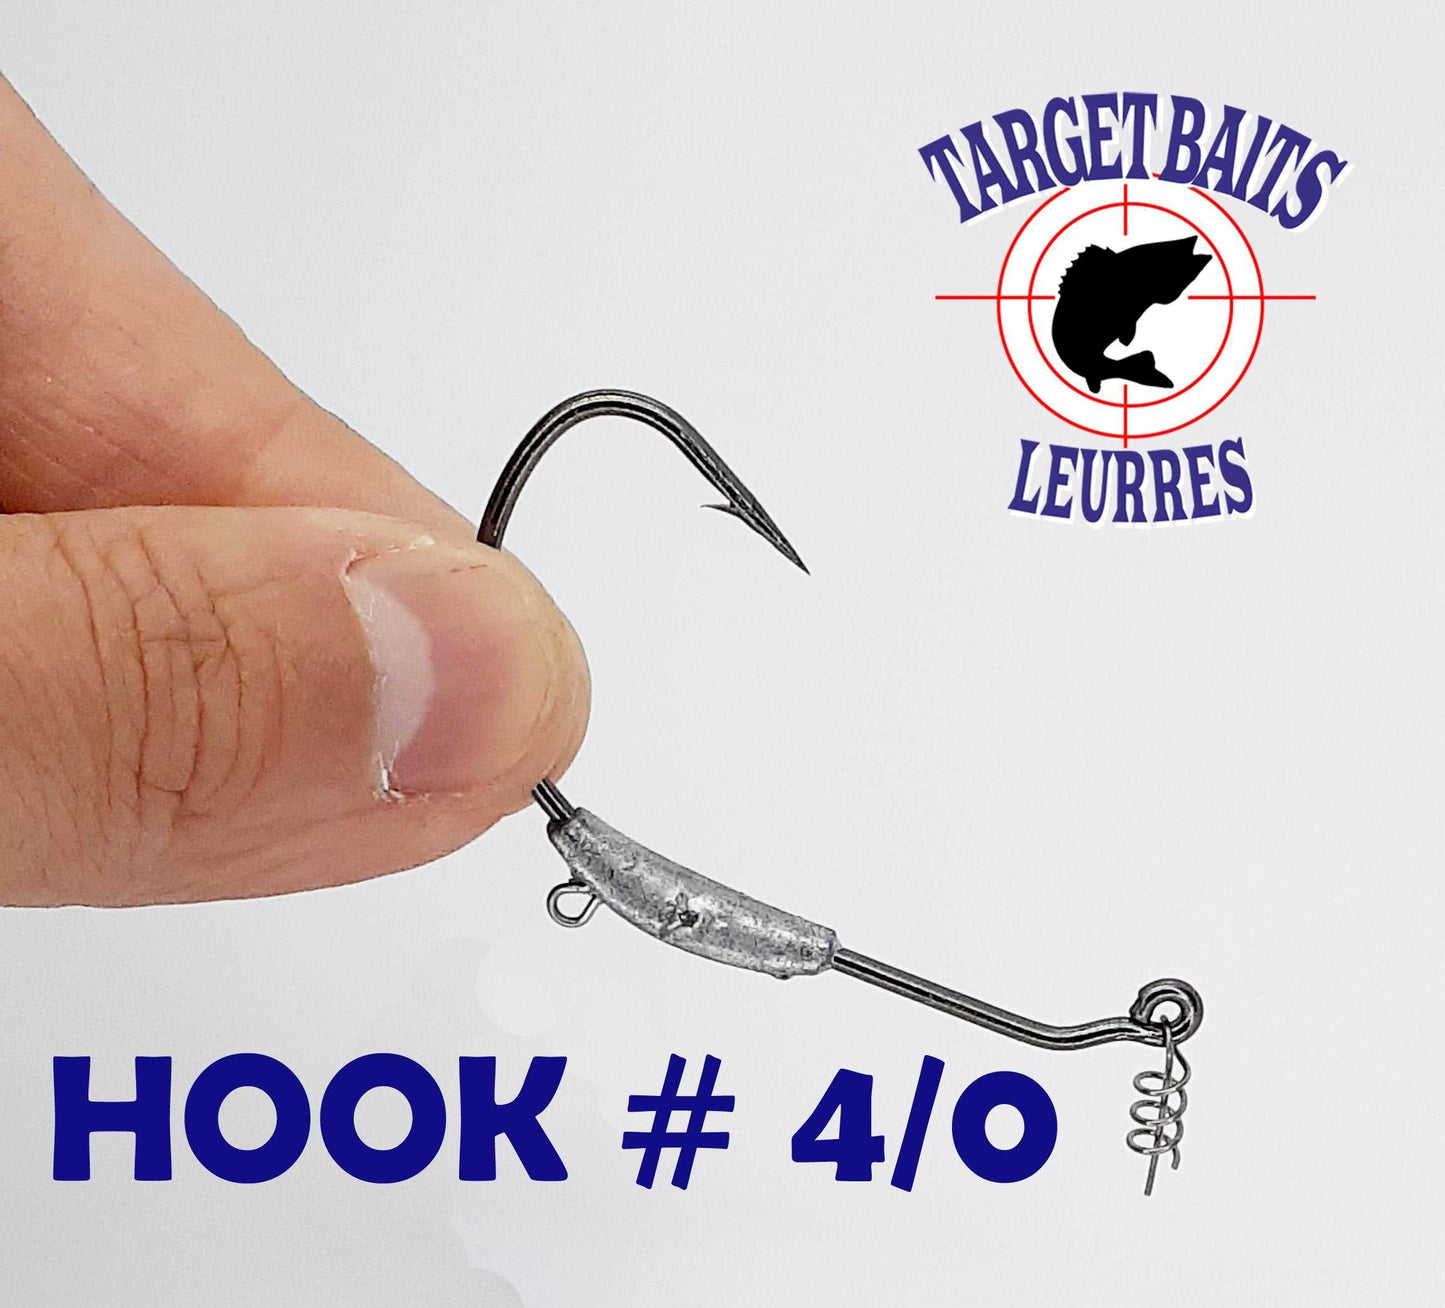 Anti-Weed Hook #4/0 – Target Baits Leurres